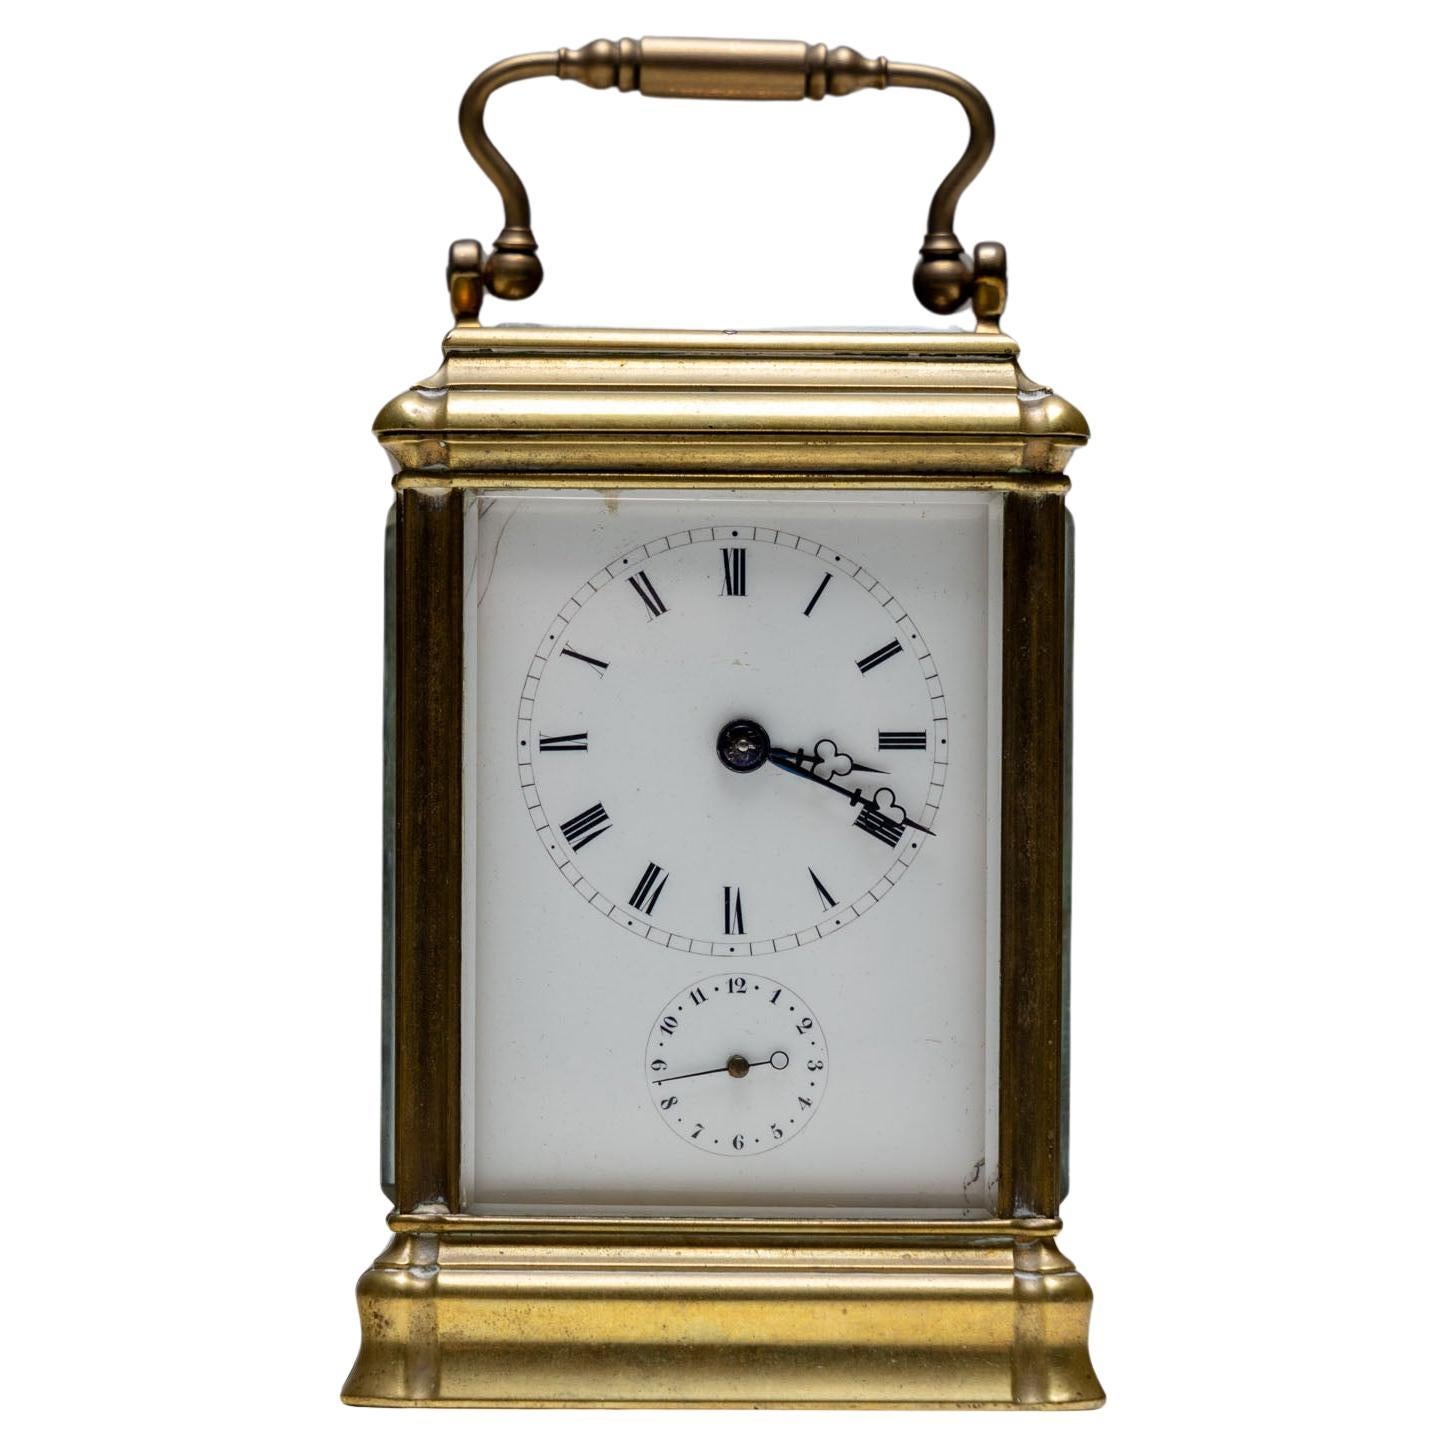 Reloj de viaje francés de Aiguilles, finales del siglo XIX / principios del XX